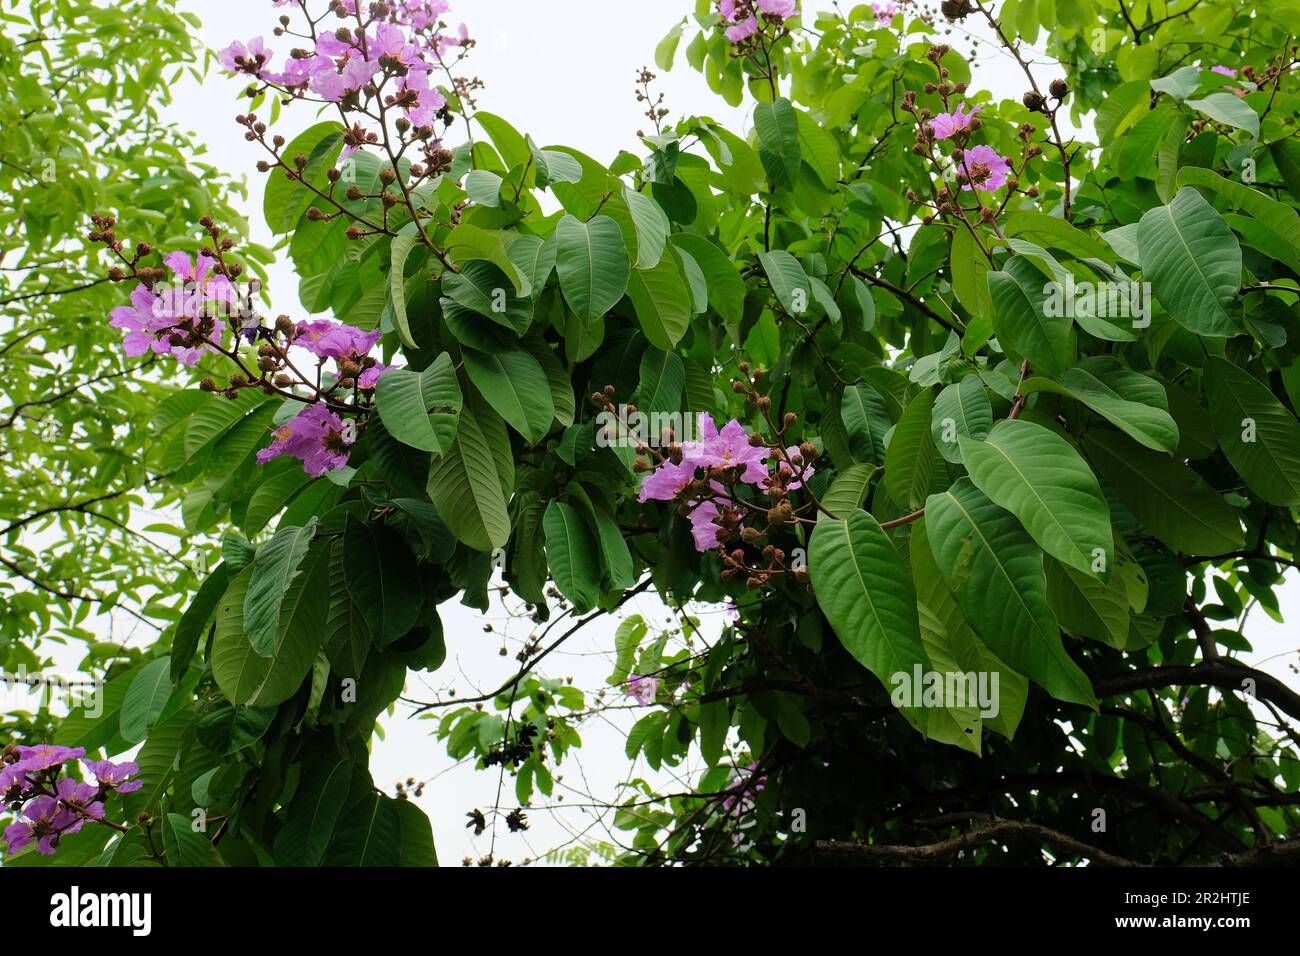 Una Lagerstroemia fiorente speciosa o Pride of India Myrtle colza gigante; un albero ornamentale deciduo con fiori rosa o viola. Foto Stock